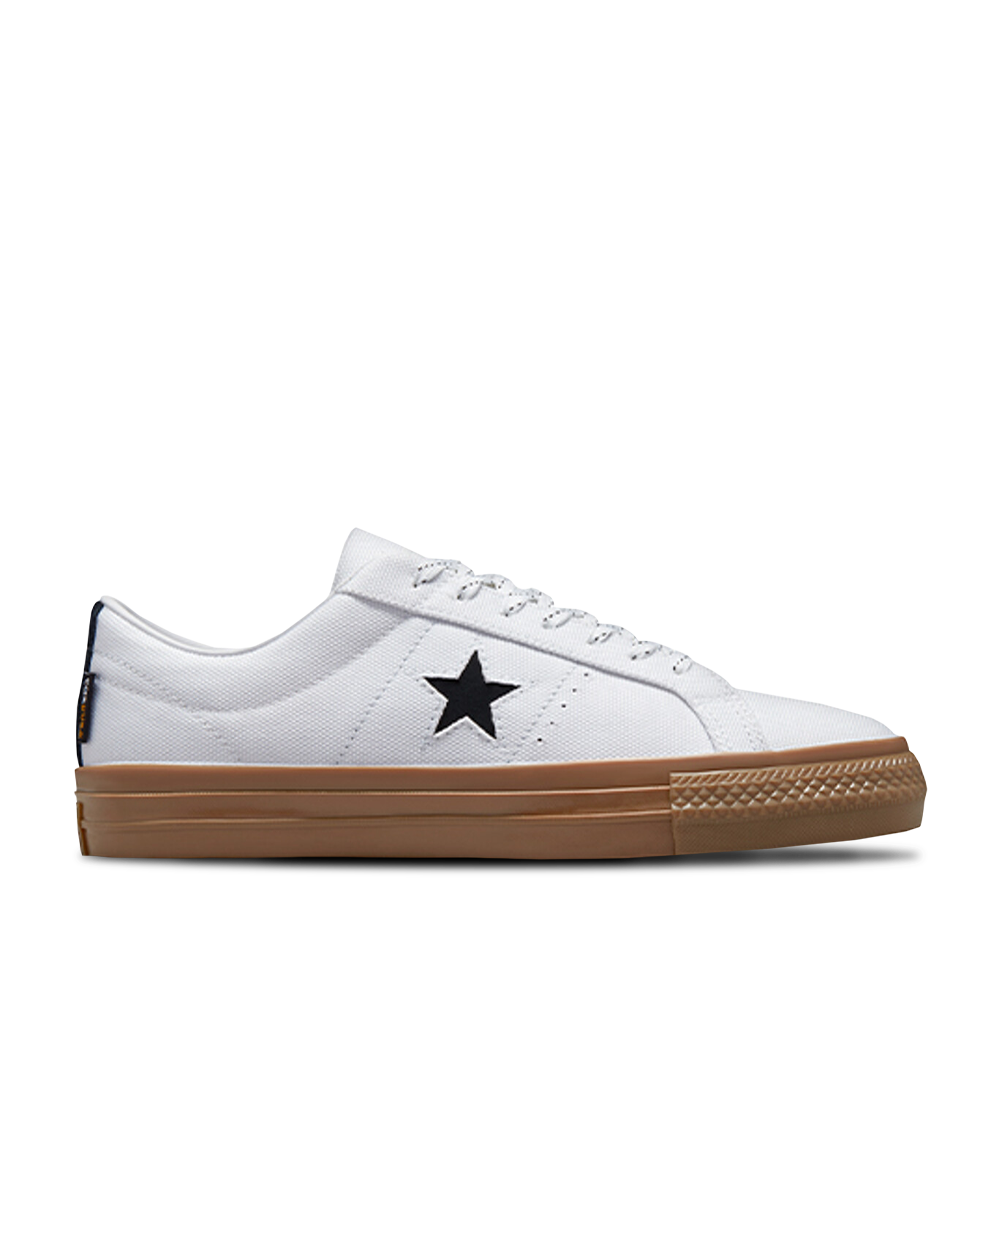 ONE STAR PRO OX White/Gum